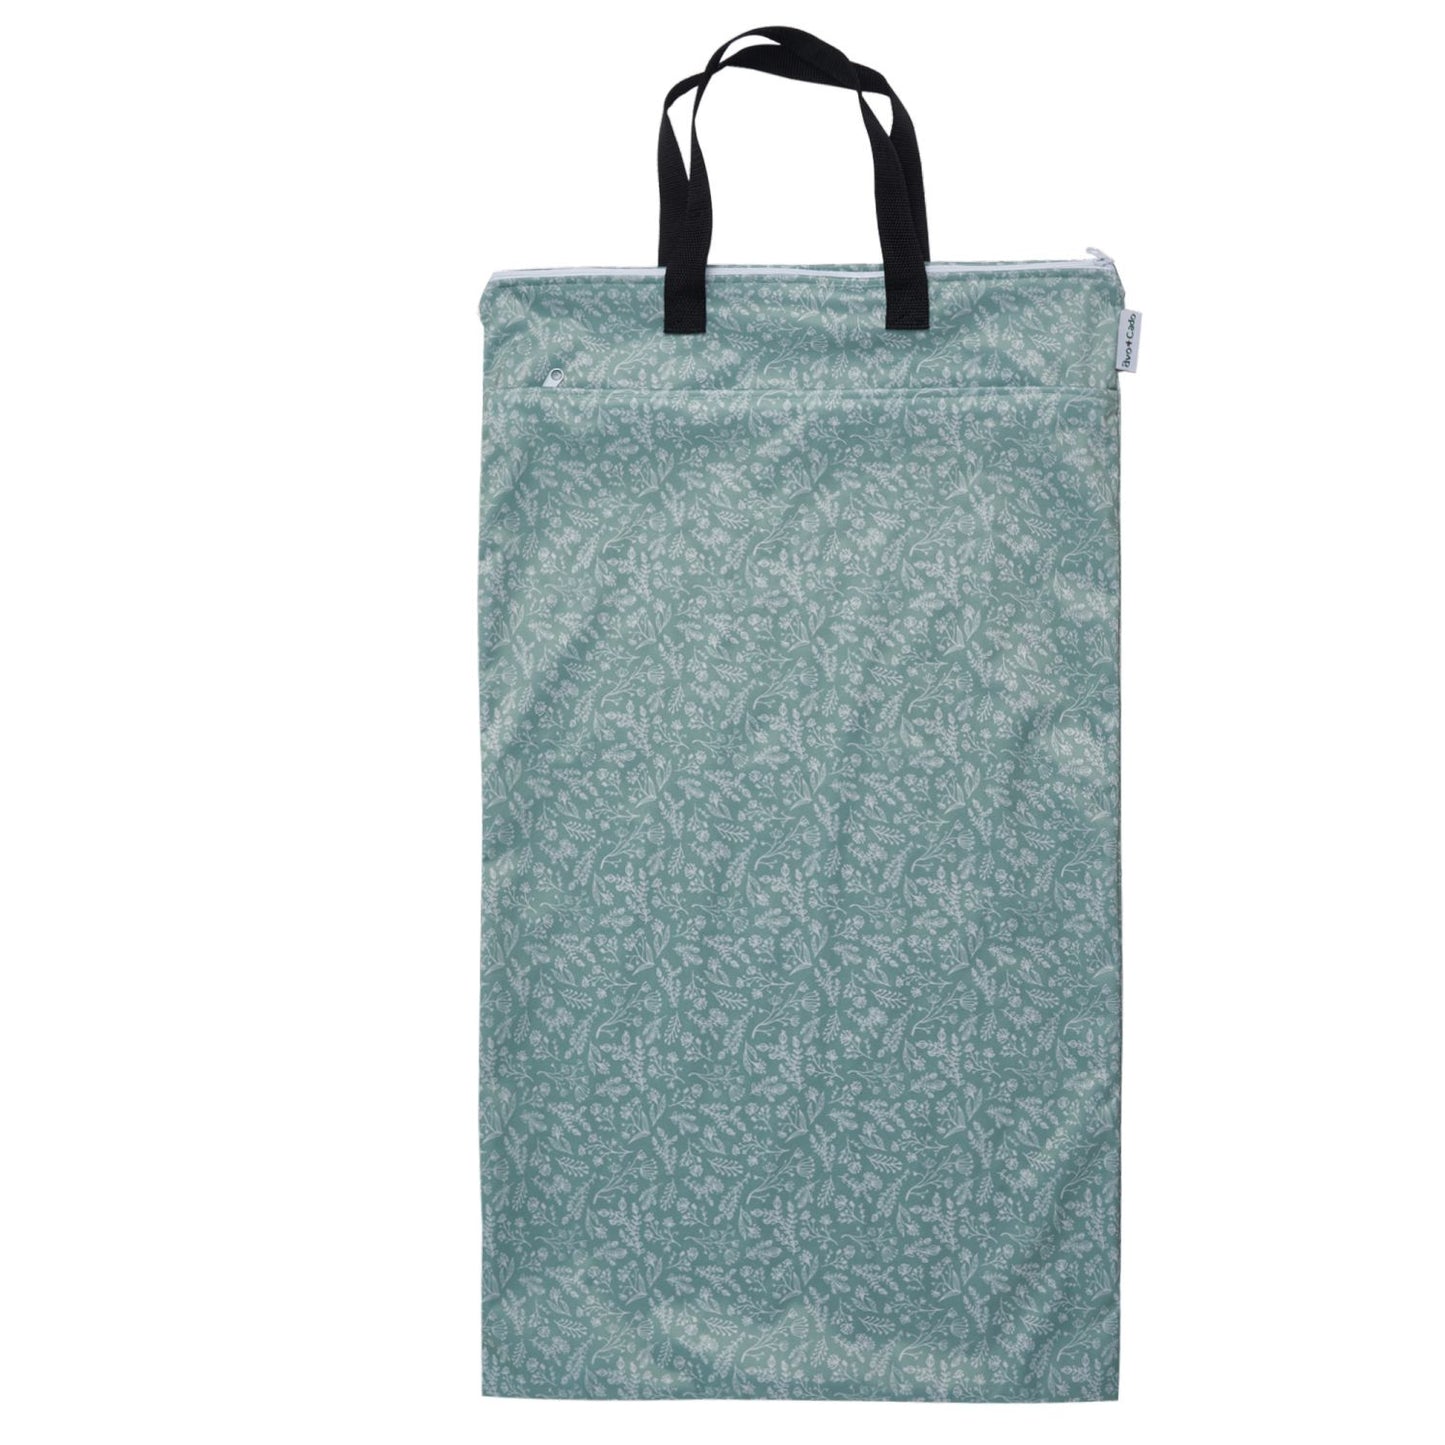 Wetbag mit Trockenfach (XL)